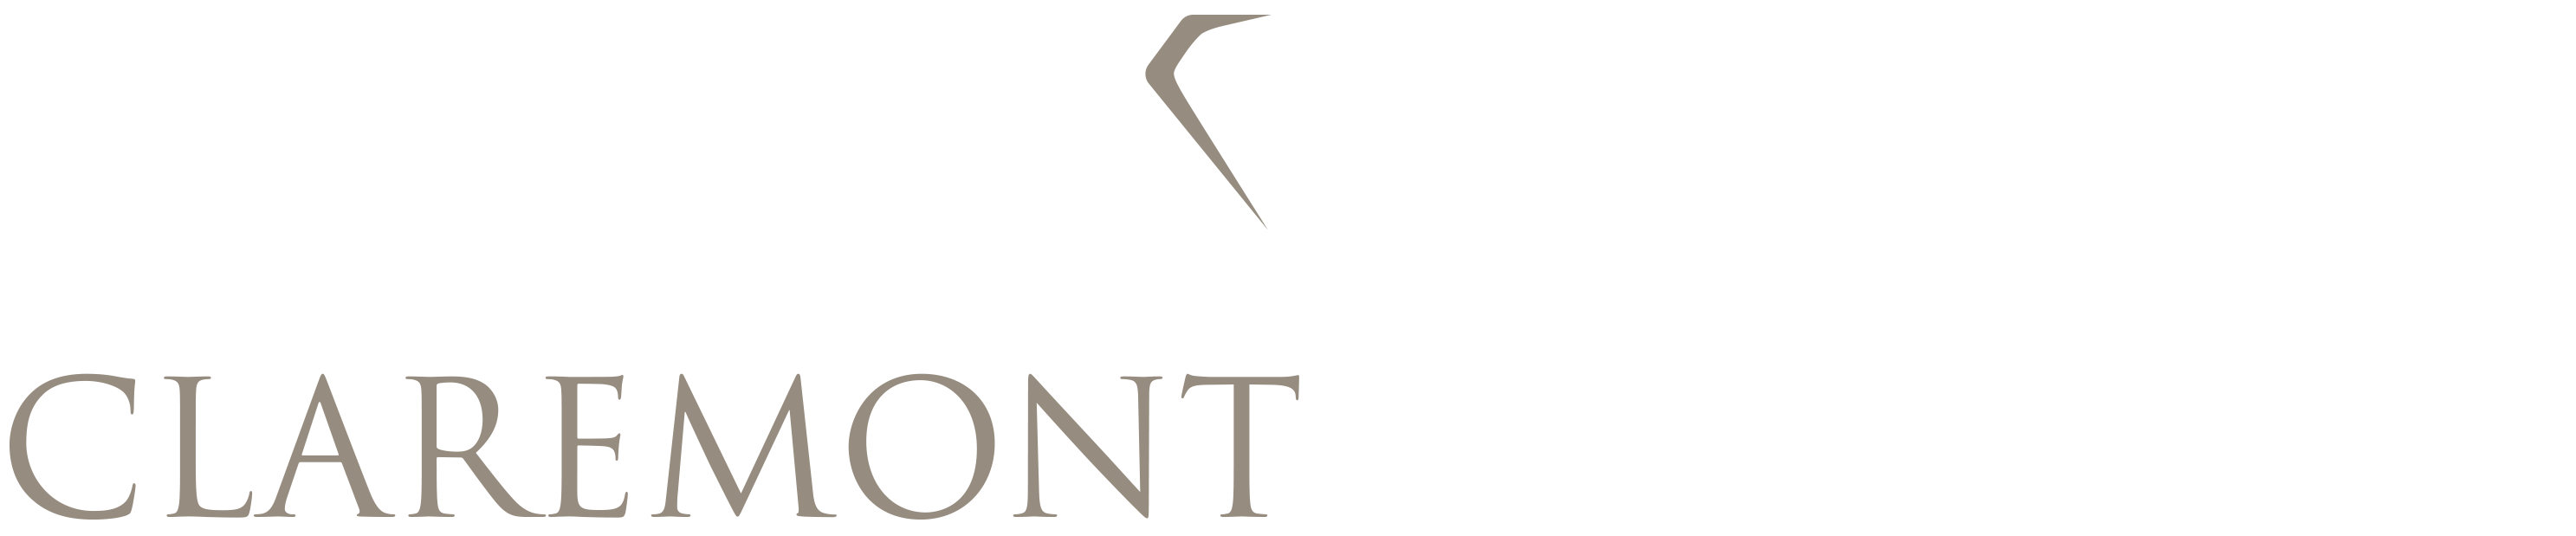 Company logo of Claremont Diamonds